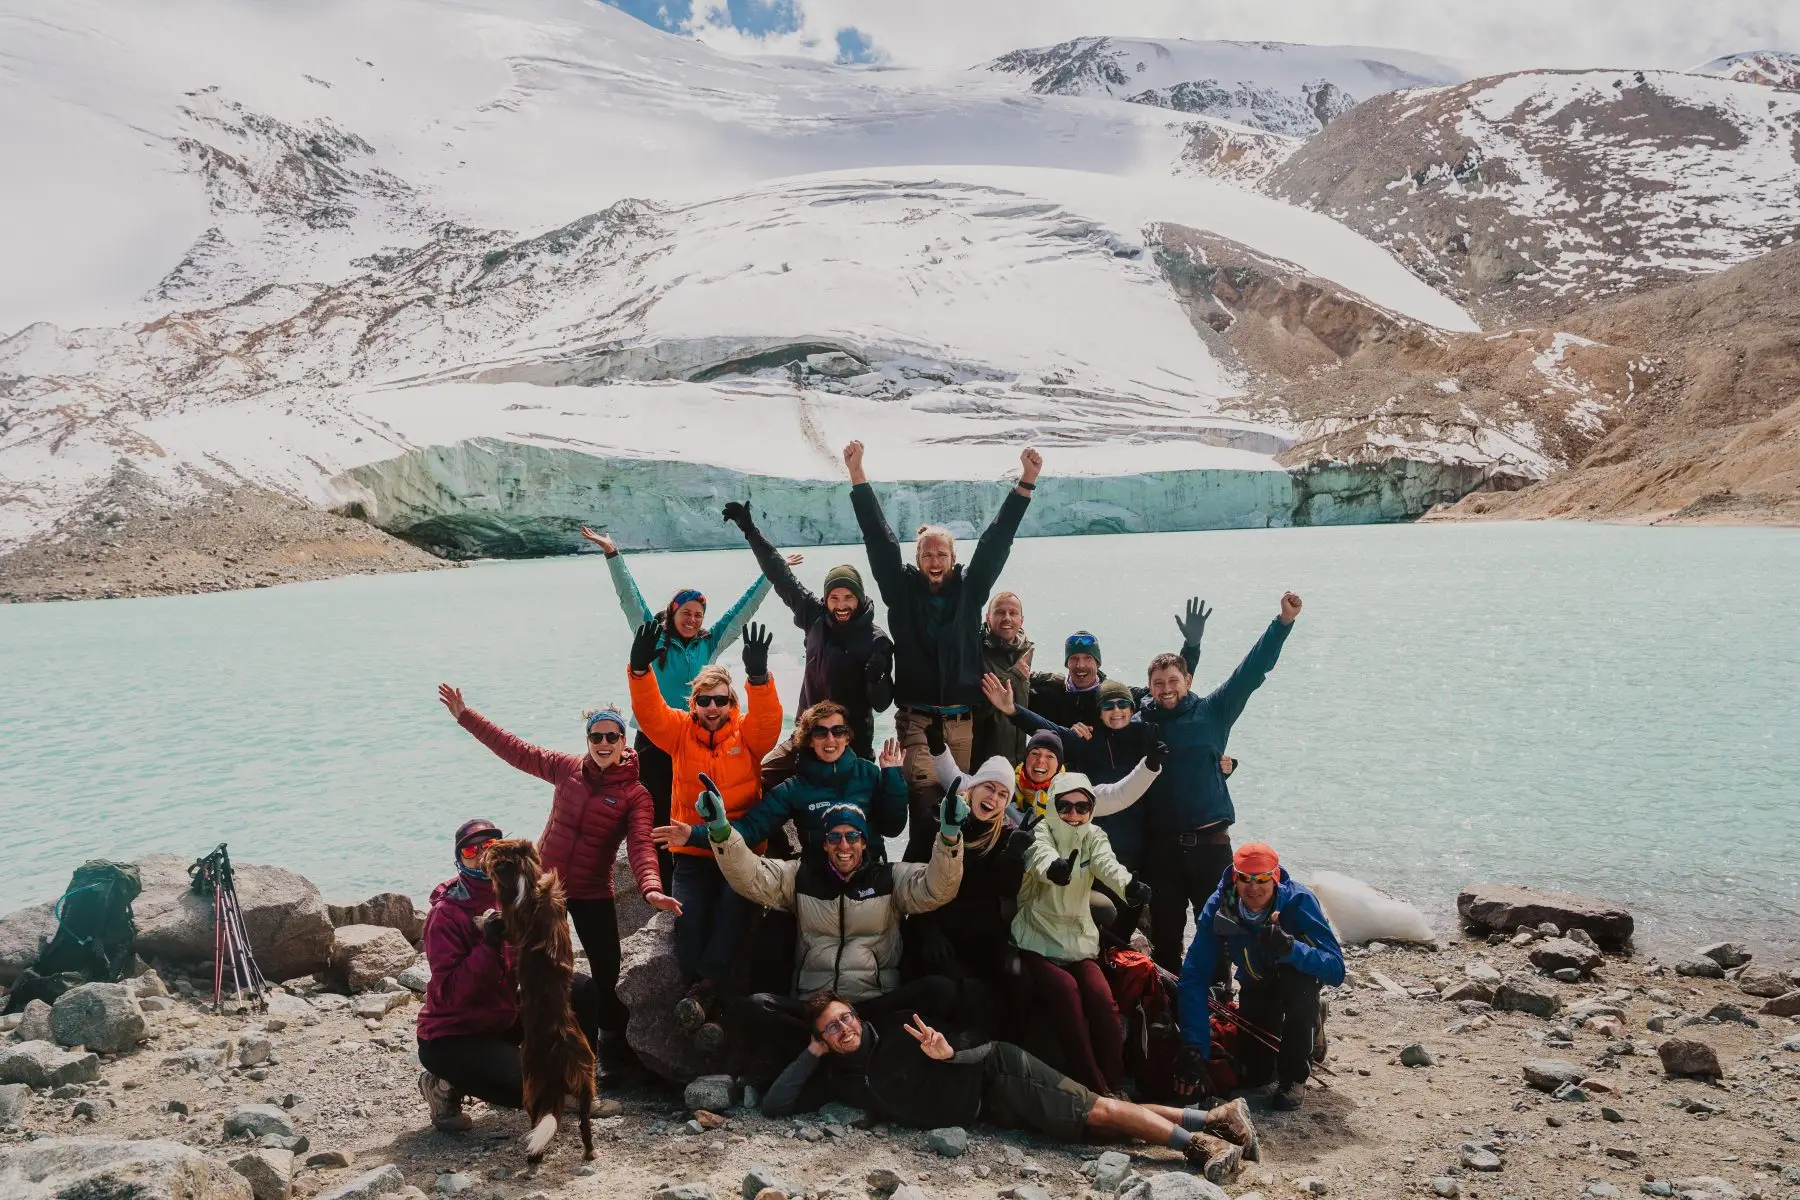 het stuwmeer van de mining institute gletsjer is een van de bestemmingen tijdens deze Kazachstan reis.